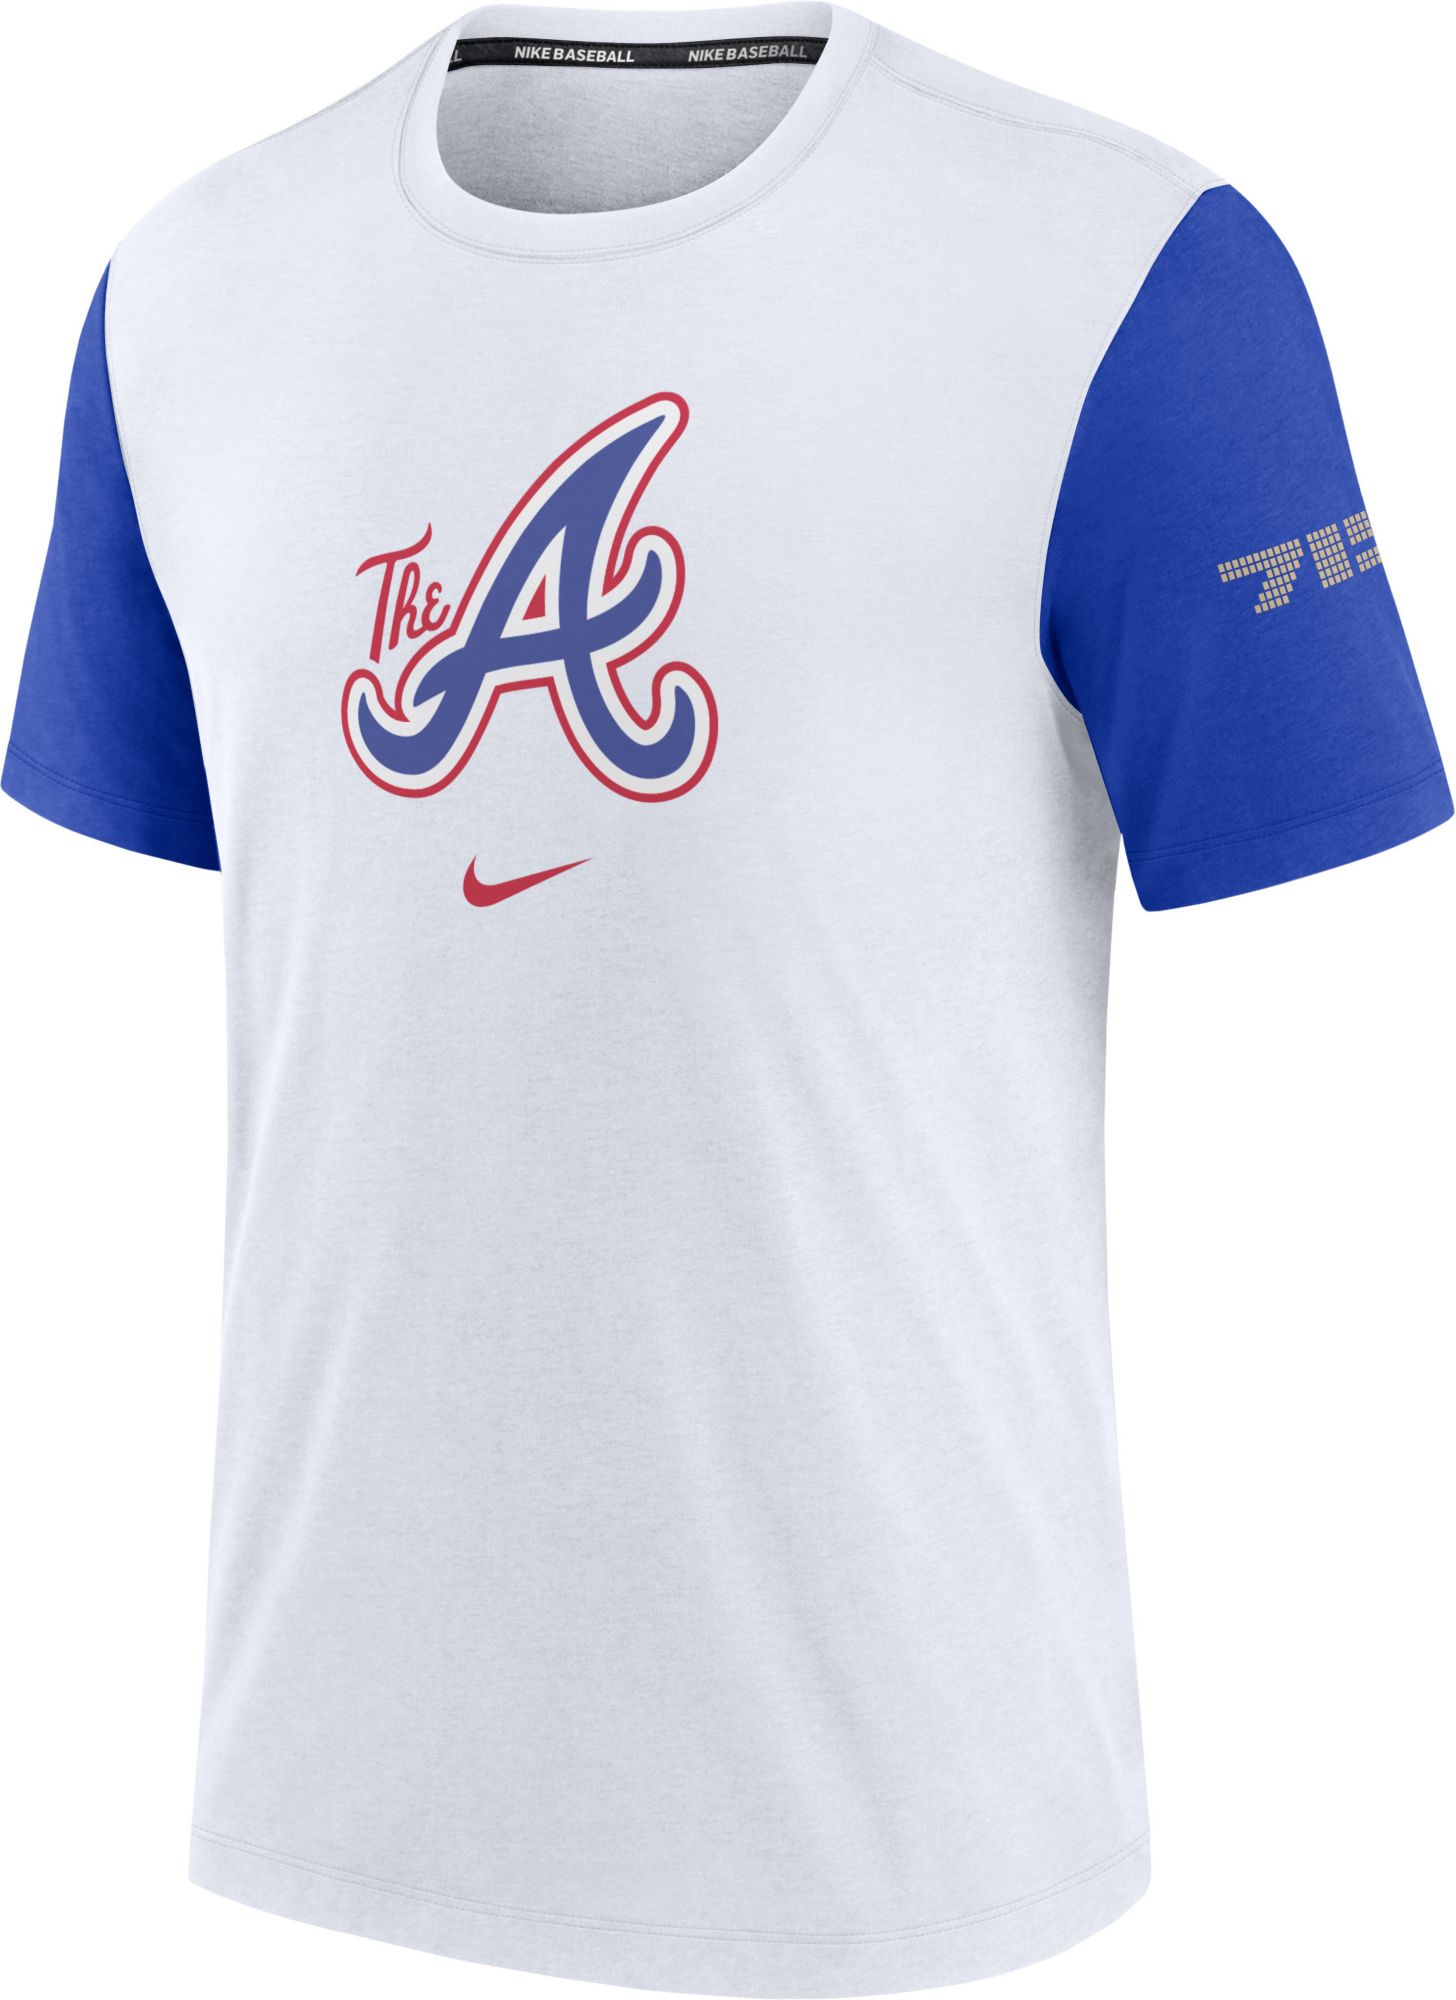 Hank Aaron Atlanta Braves MLB Legend Never Die 1934-2021 shirt, hoodie,  sweater, long sleeve and tank top